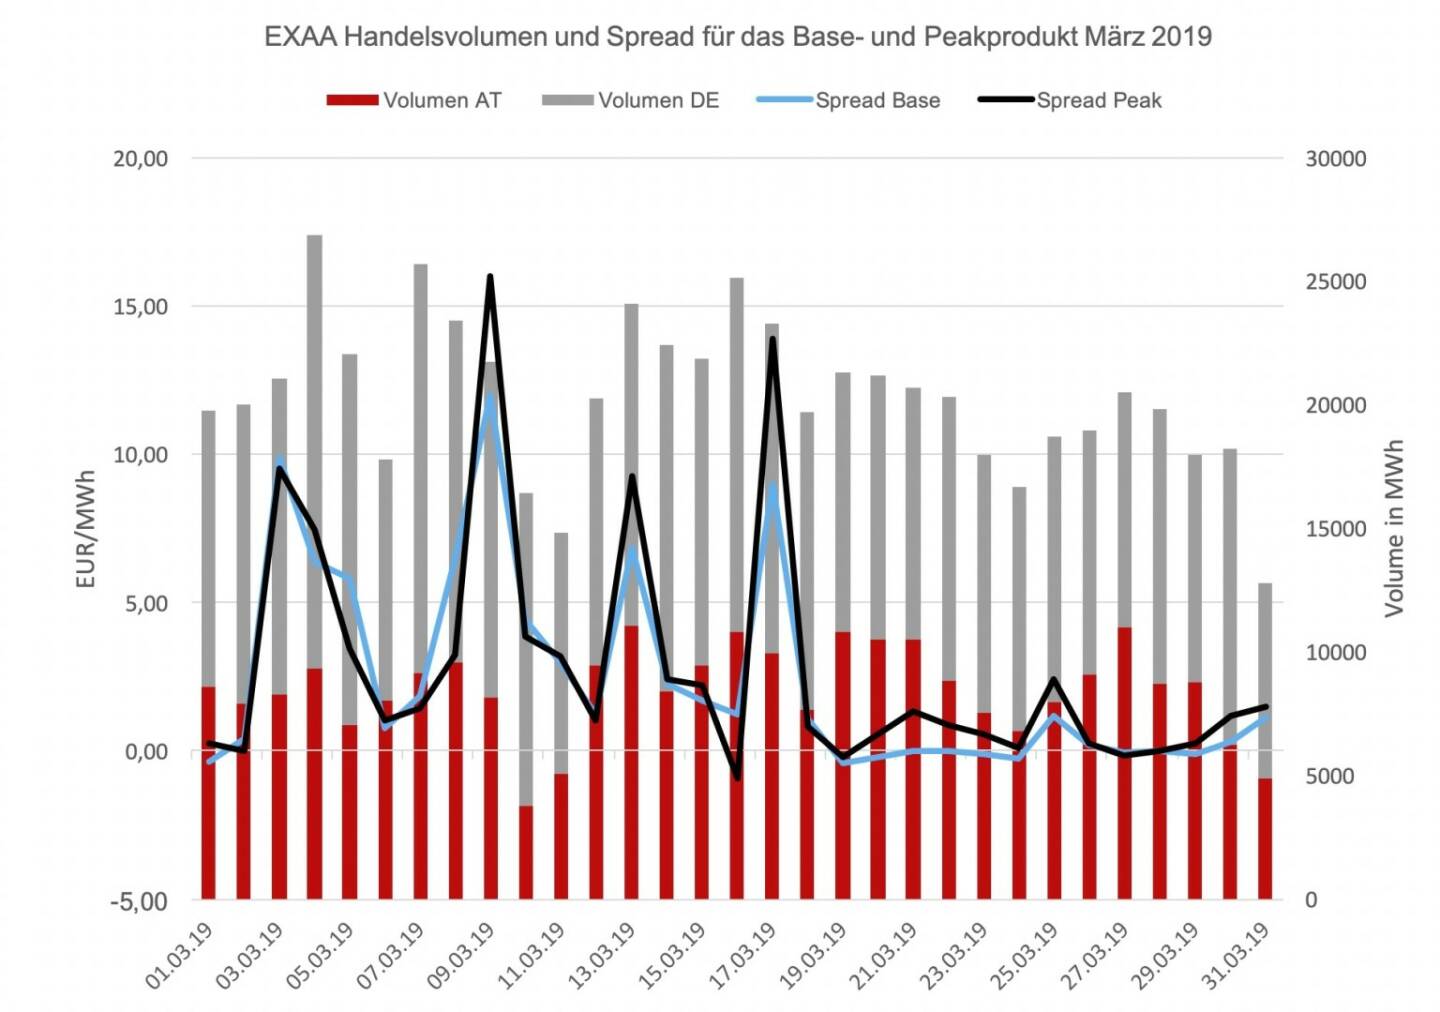 Der Location-Spread, das ist die Preisdifferenz der Handelsprodukte zwischen dem österreichischen und dem deutschen Marktgebiet, ergab ein durchschnittliches Preisniveau von 2,65 EUR/MWh für das Baseprodukt und 2,99 EUR/MWh für das Peakprodukt. Der höchste Location-Spread wurde am 9. März gehandelt und betrug 11,99 EUR/MWh für das Baseprodukt und 16,00 EUR/MWh für das Peakprodukt. 
